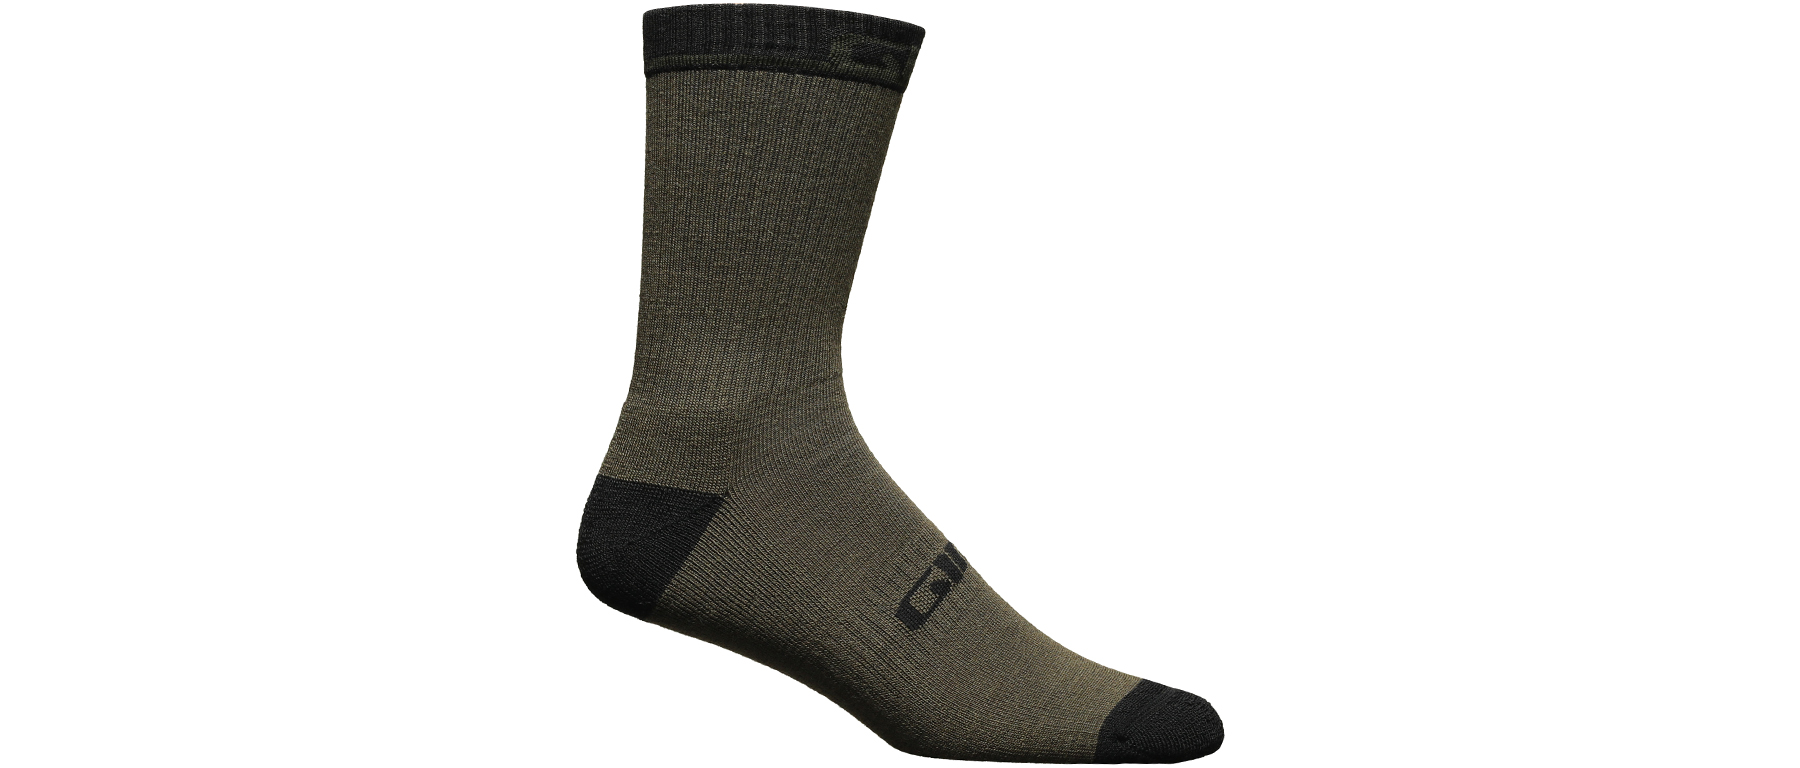 Giro Winter Merino Wool Socks